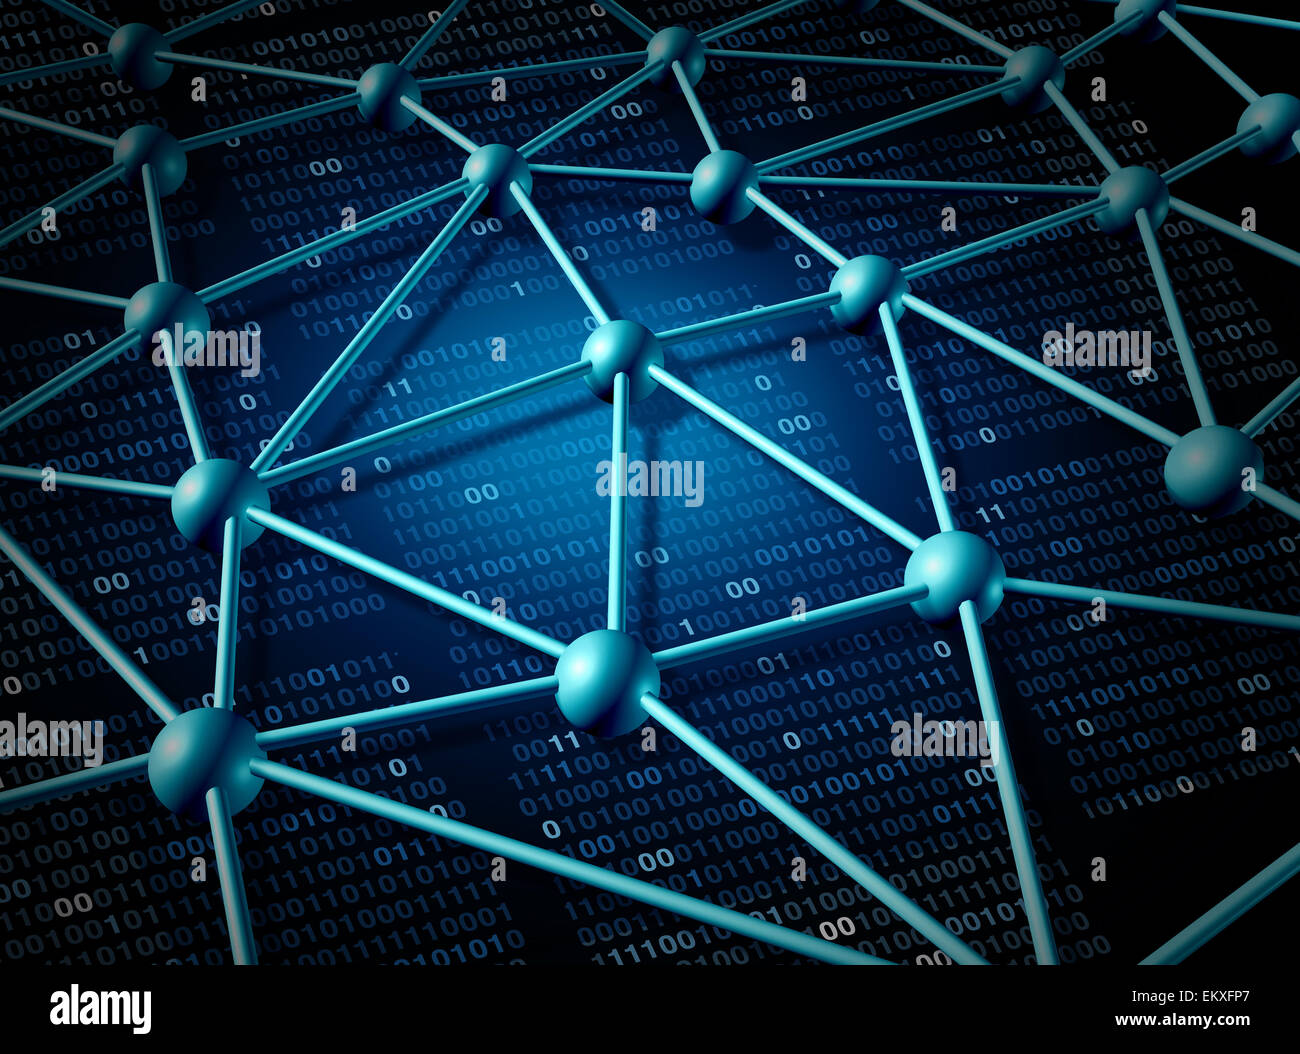 Réseau mondial des télécommunications et des réseaux structure concept avec grille de connexion sur l'internet comme un résumé de la technologie d'arrière-plan avec le code binaire de l'information et de données numériques représentant la communauté du serveur. Banque D'Images